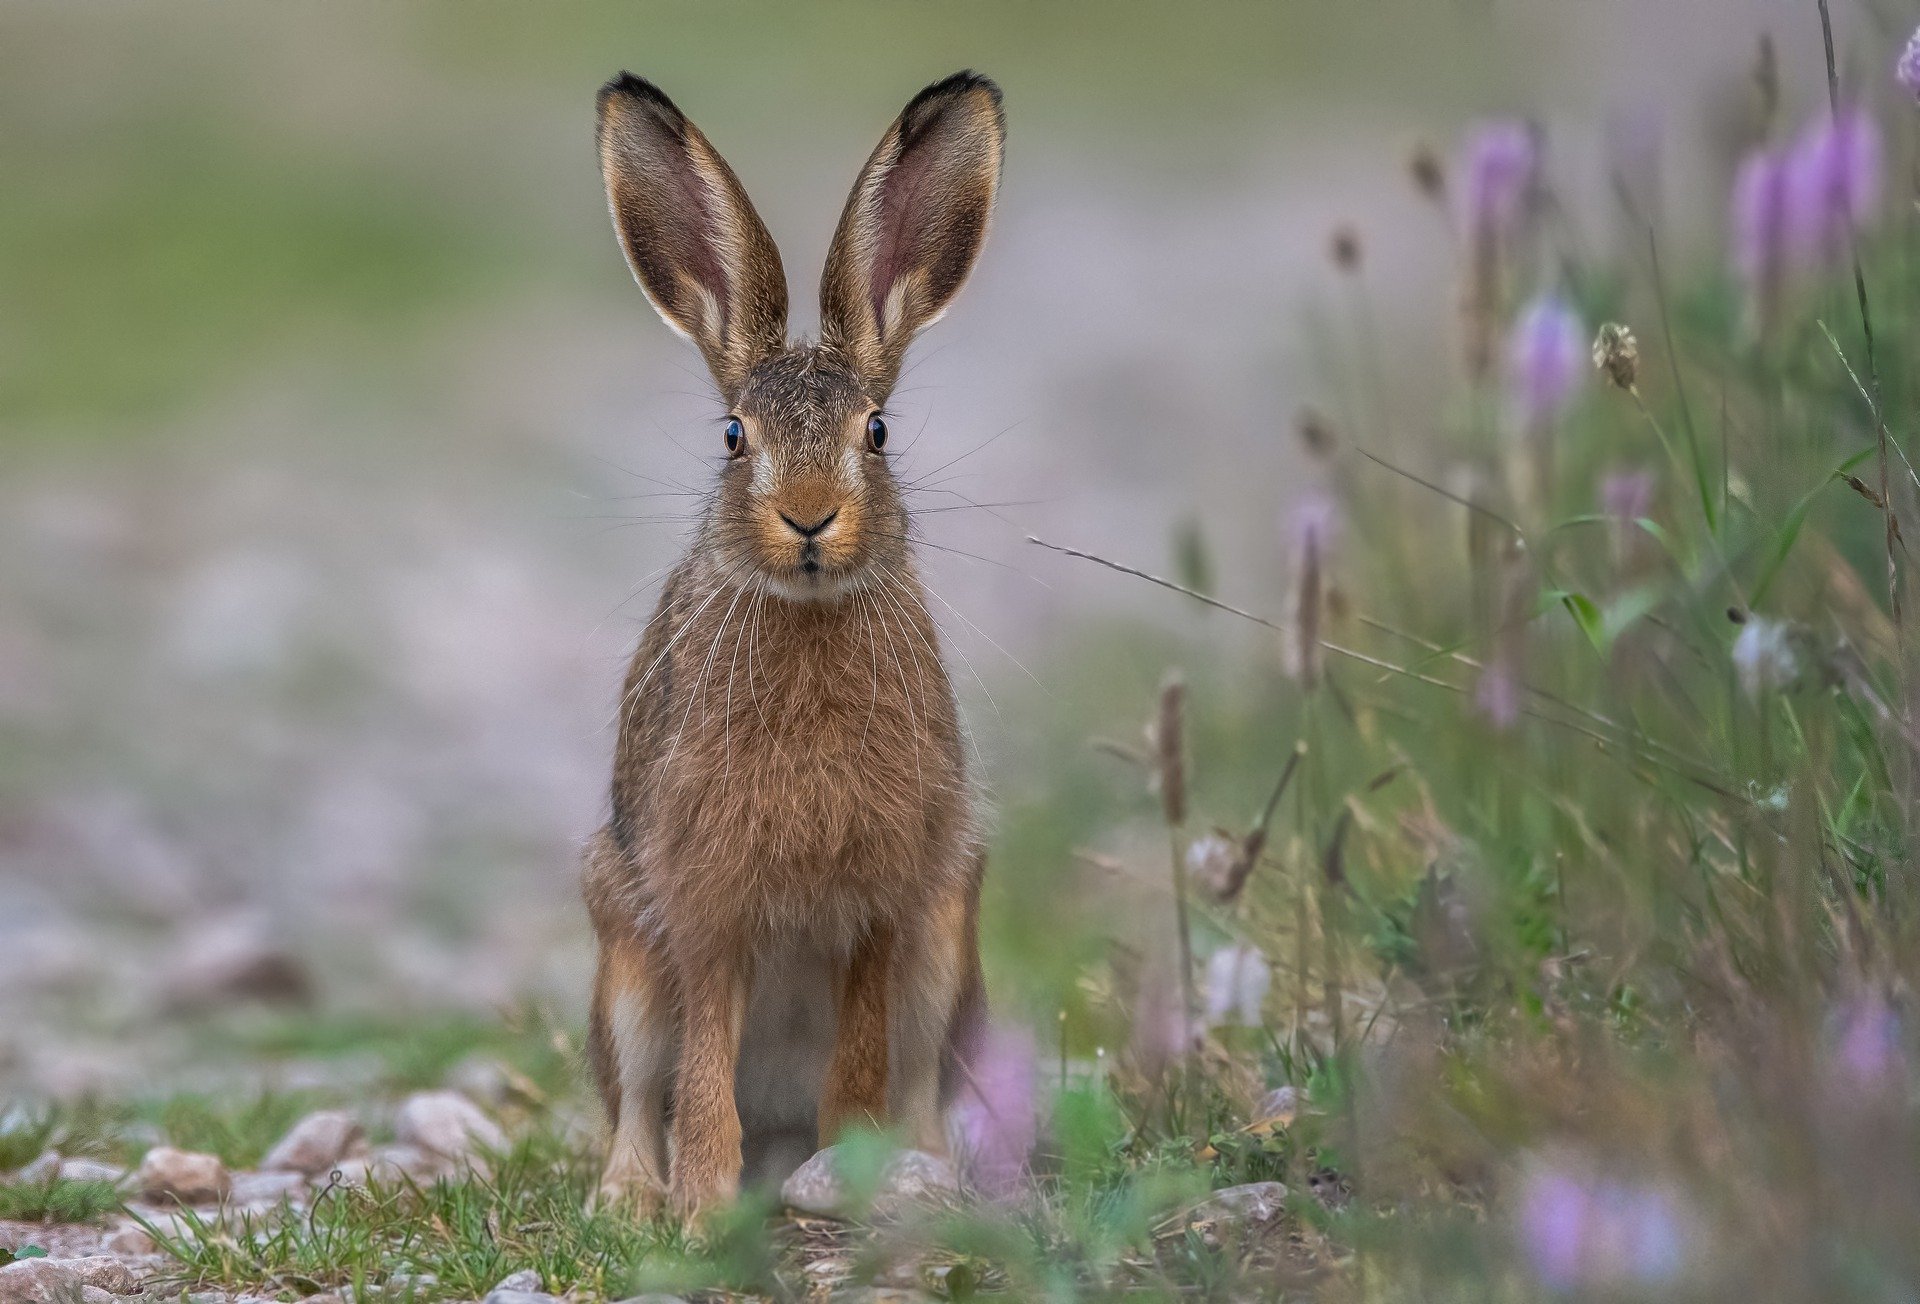 The rabbit began to hop away! | Photo: Pixabay/Sven Ziegler 